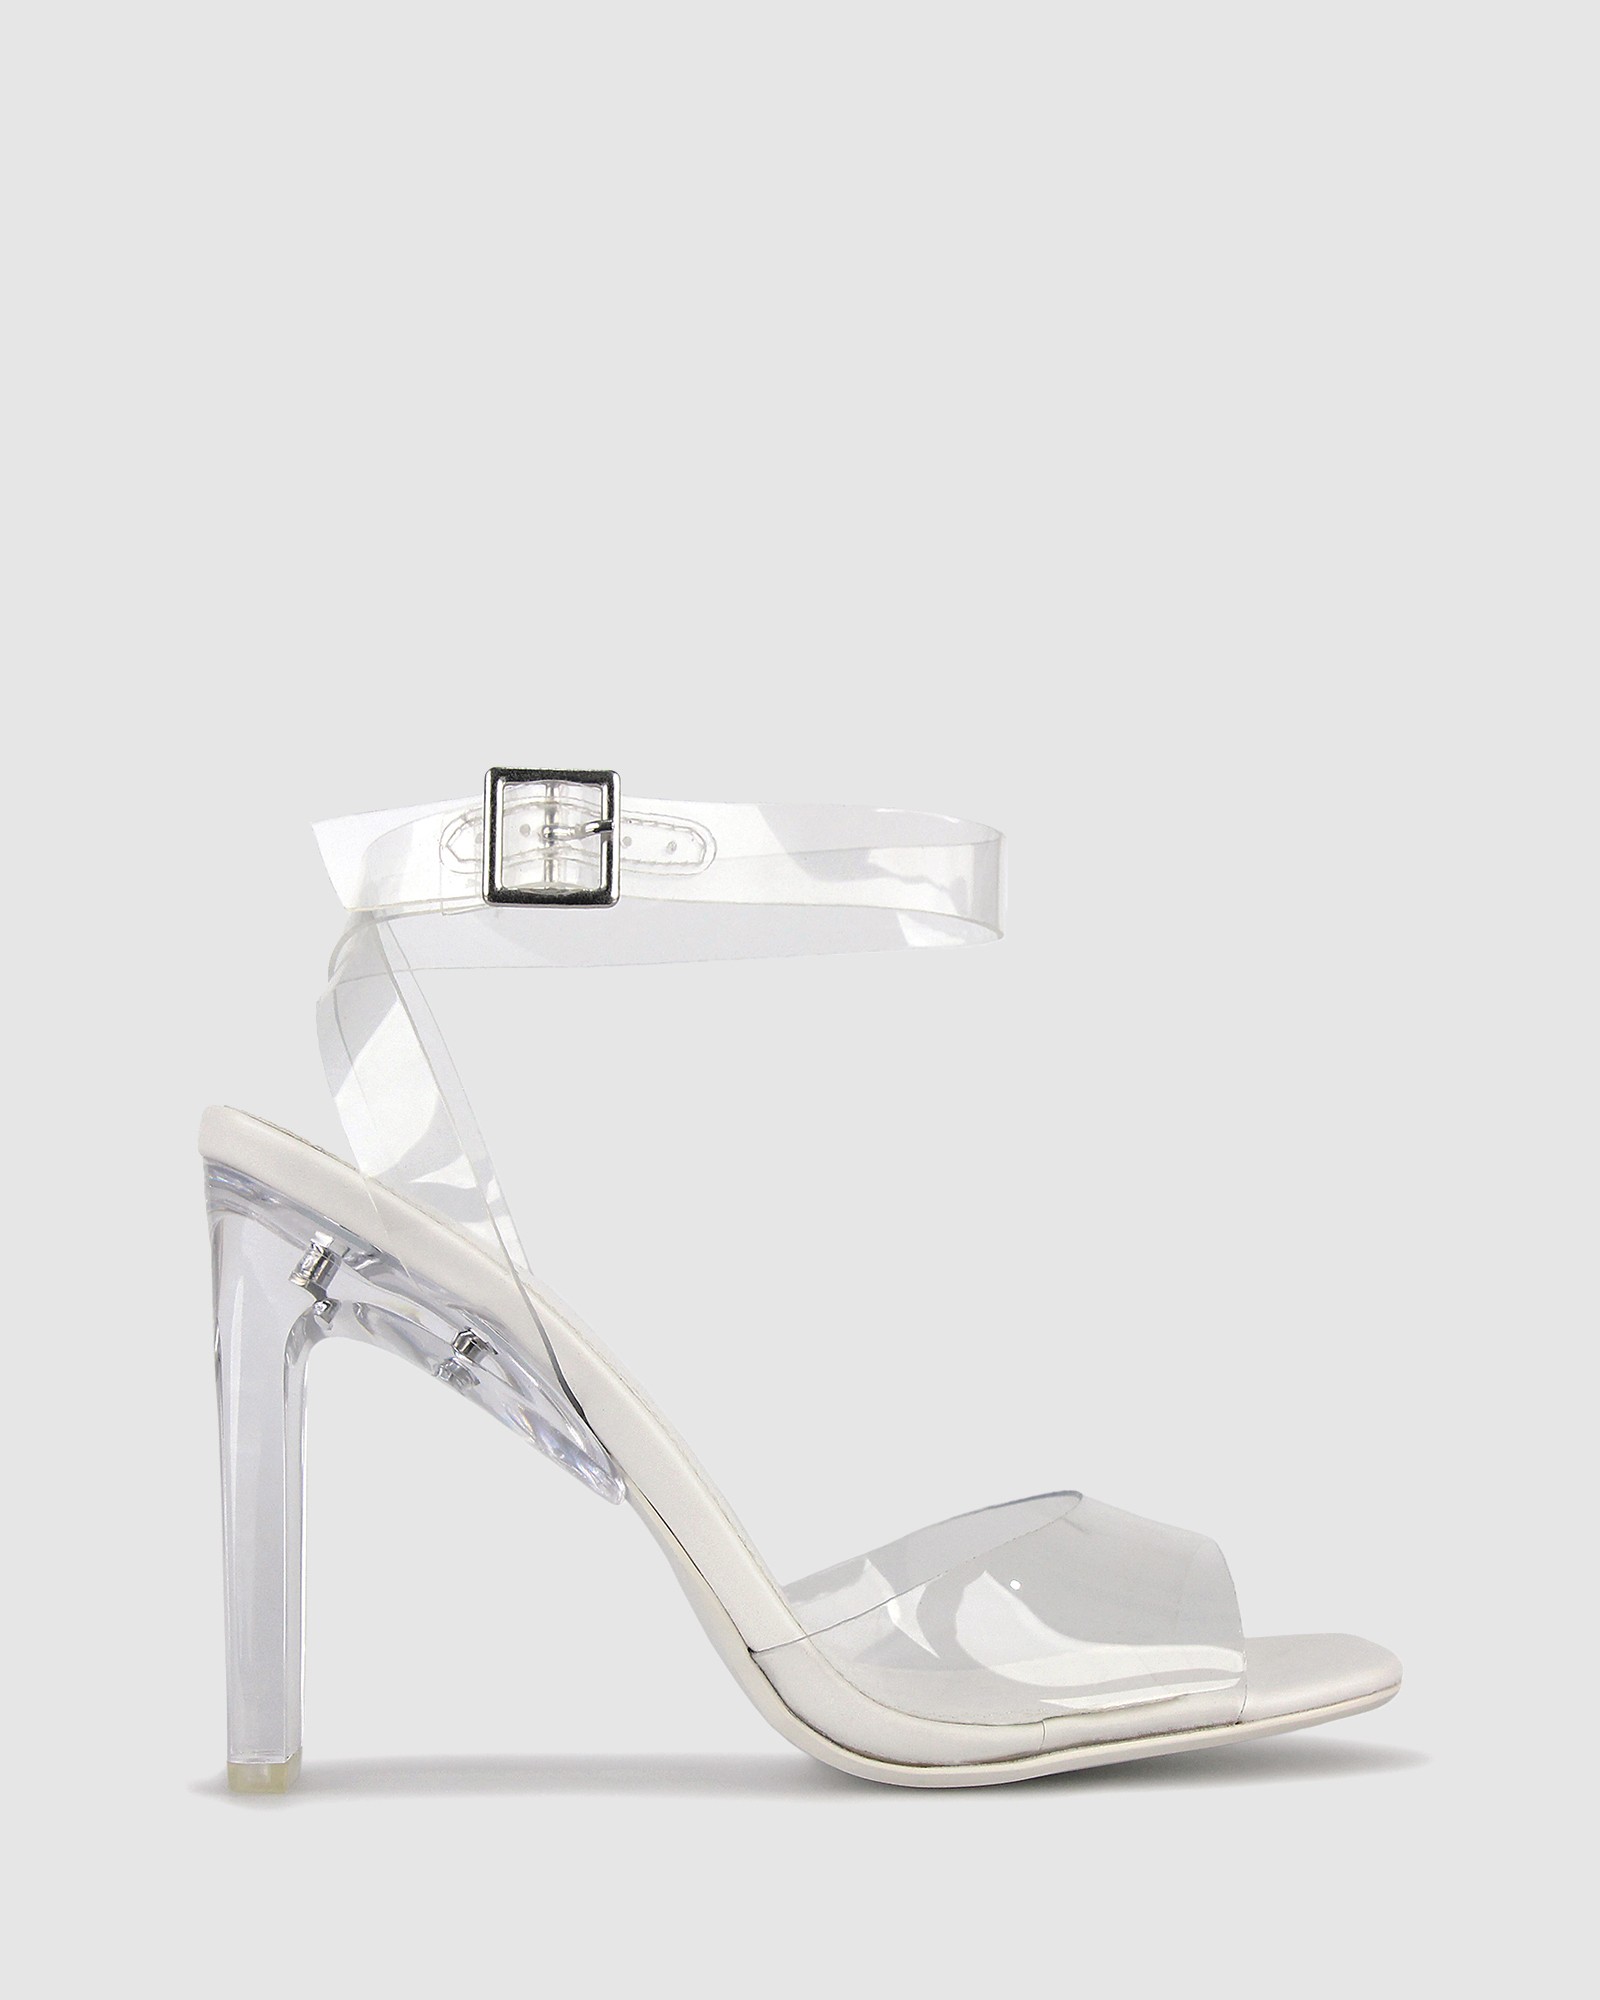 Yasmin Vinylite Heeled Sandals White by Zu | ShoeSales